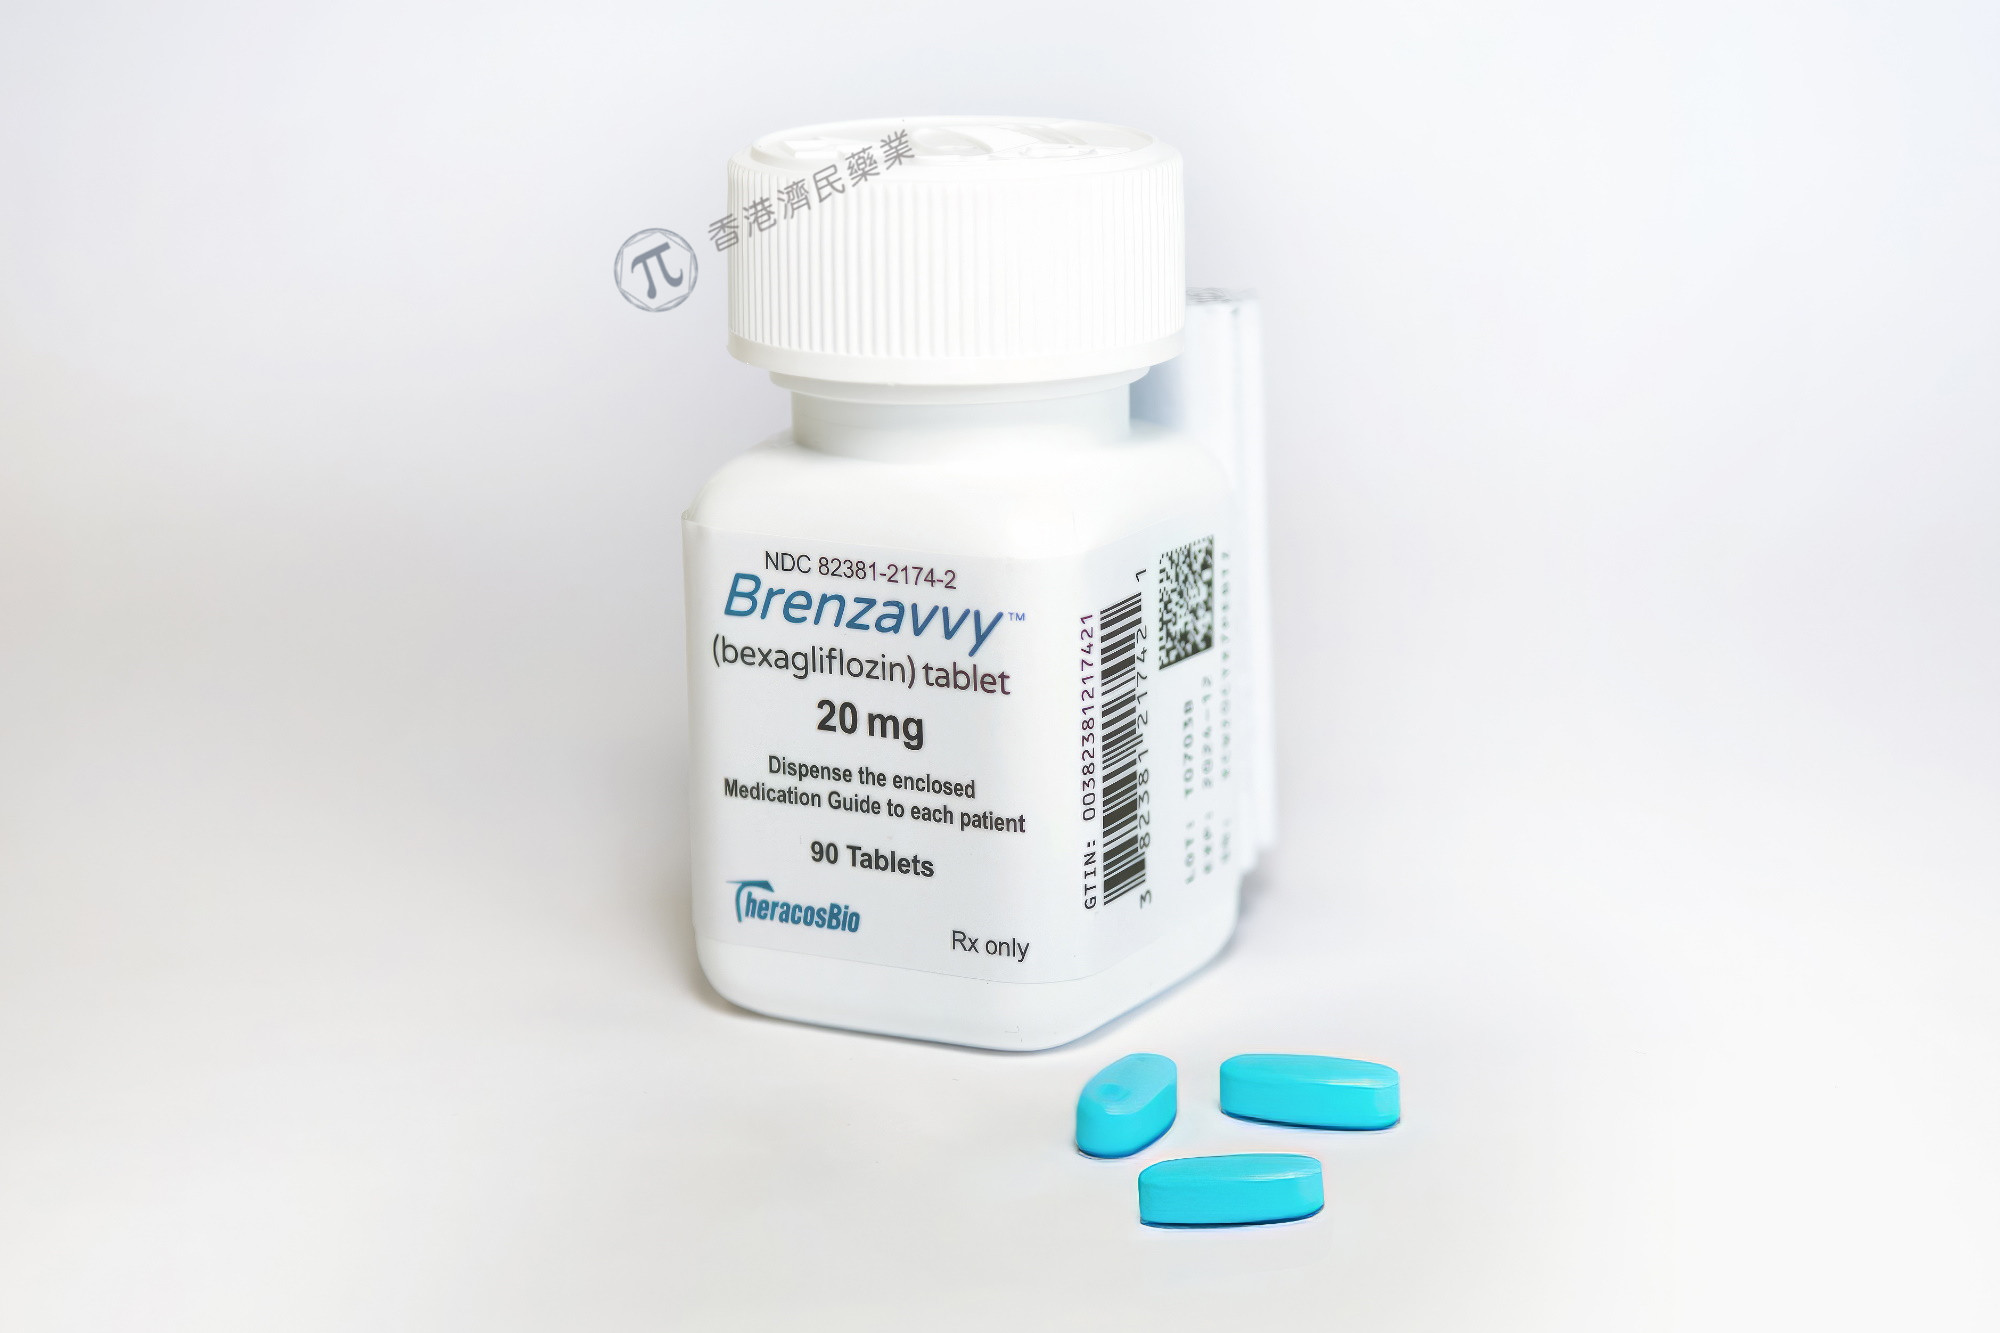 成人二型糖尿病新药Brenzavvy(bexagliflozin)已在美上市，改善患者血糖控制_香港济民药业